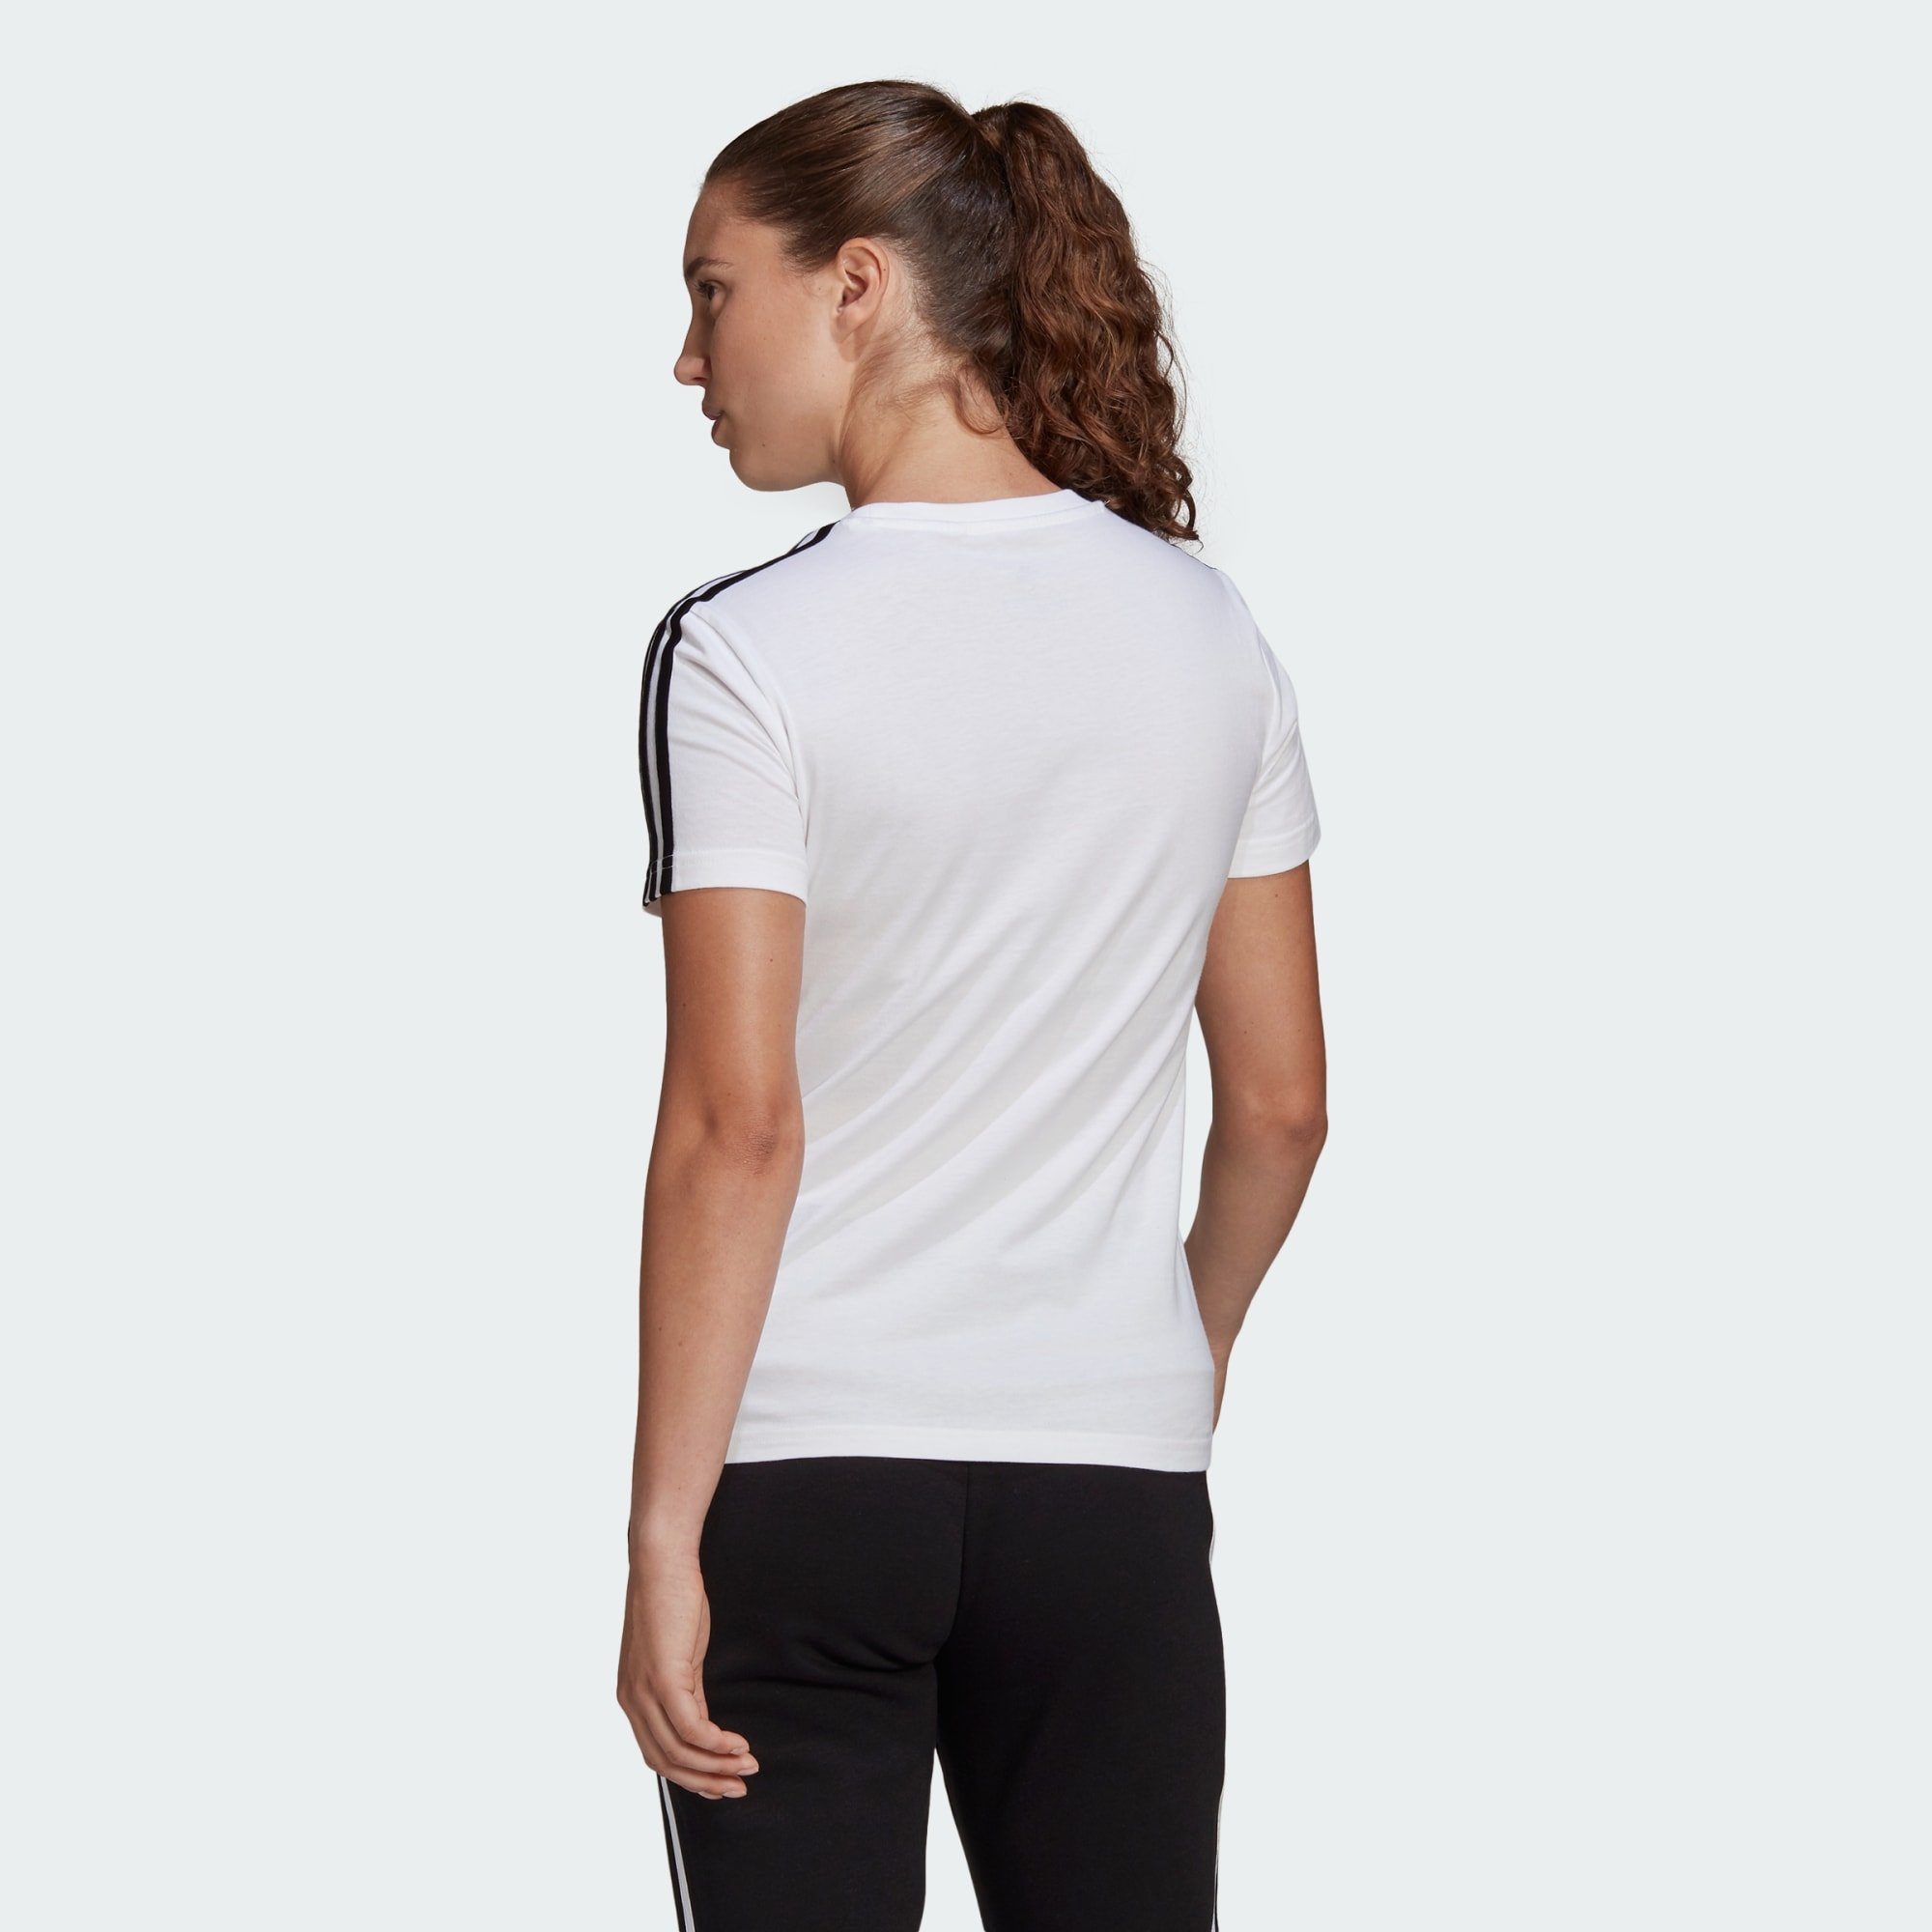 adidas Sportswear T-Shirt LOUNGEWEAR ESSENTIALS / Black 3-STREIFEN White T-SHIRT SLIM